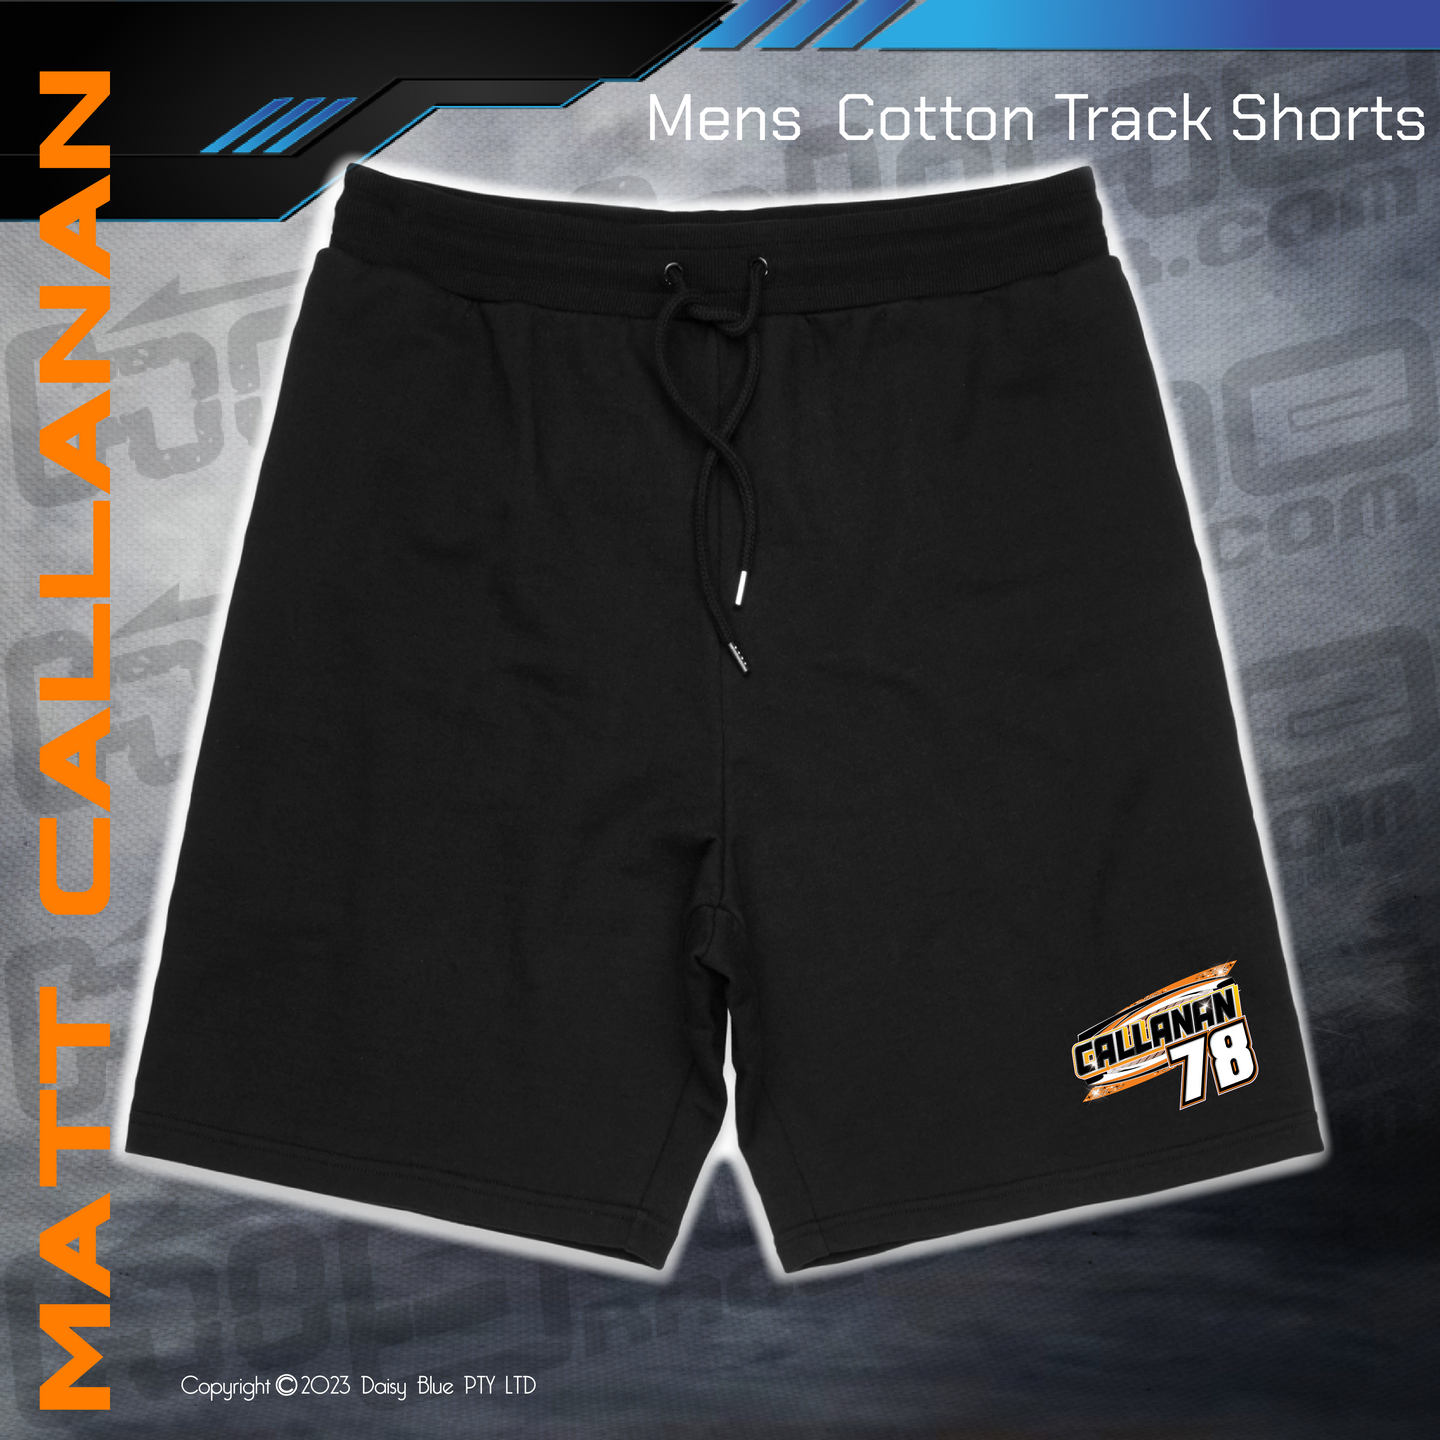 Track Shorts - Matthew Callanan